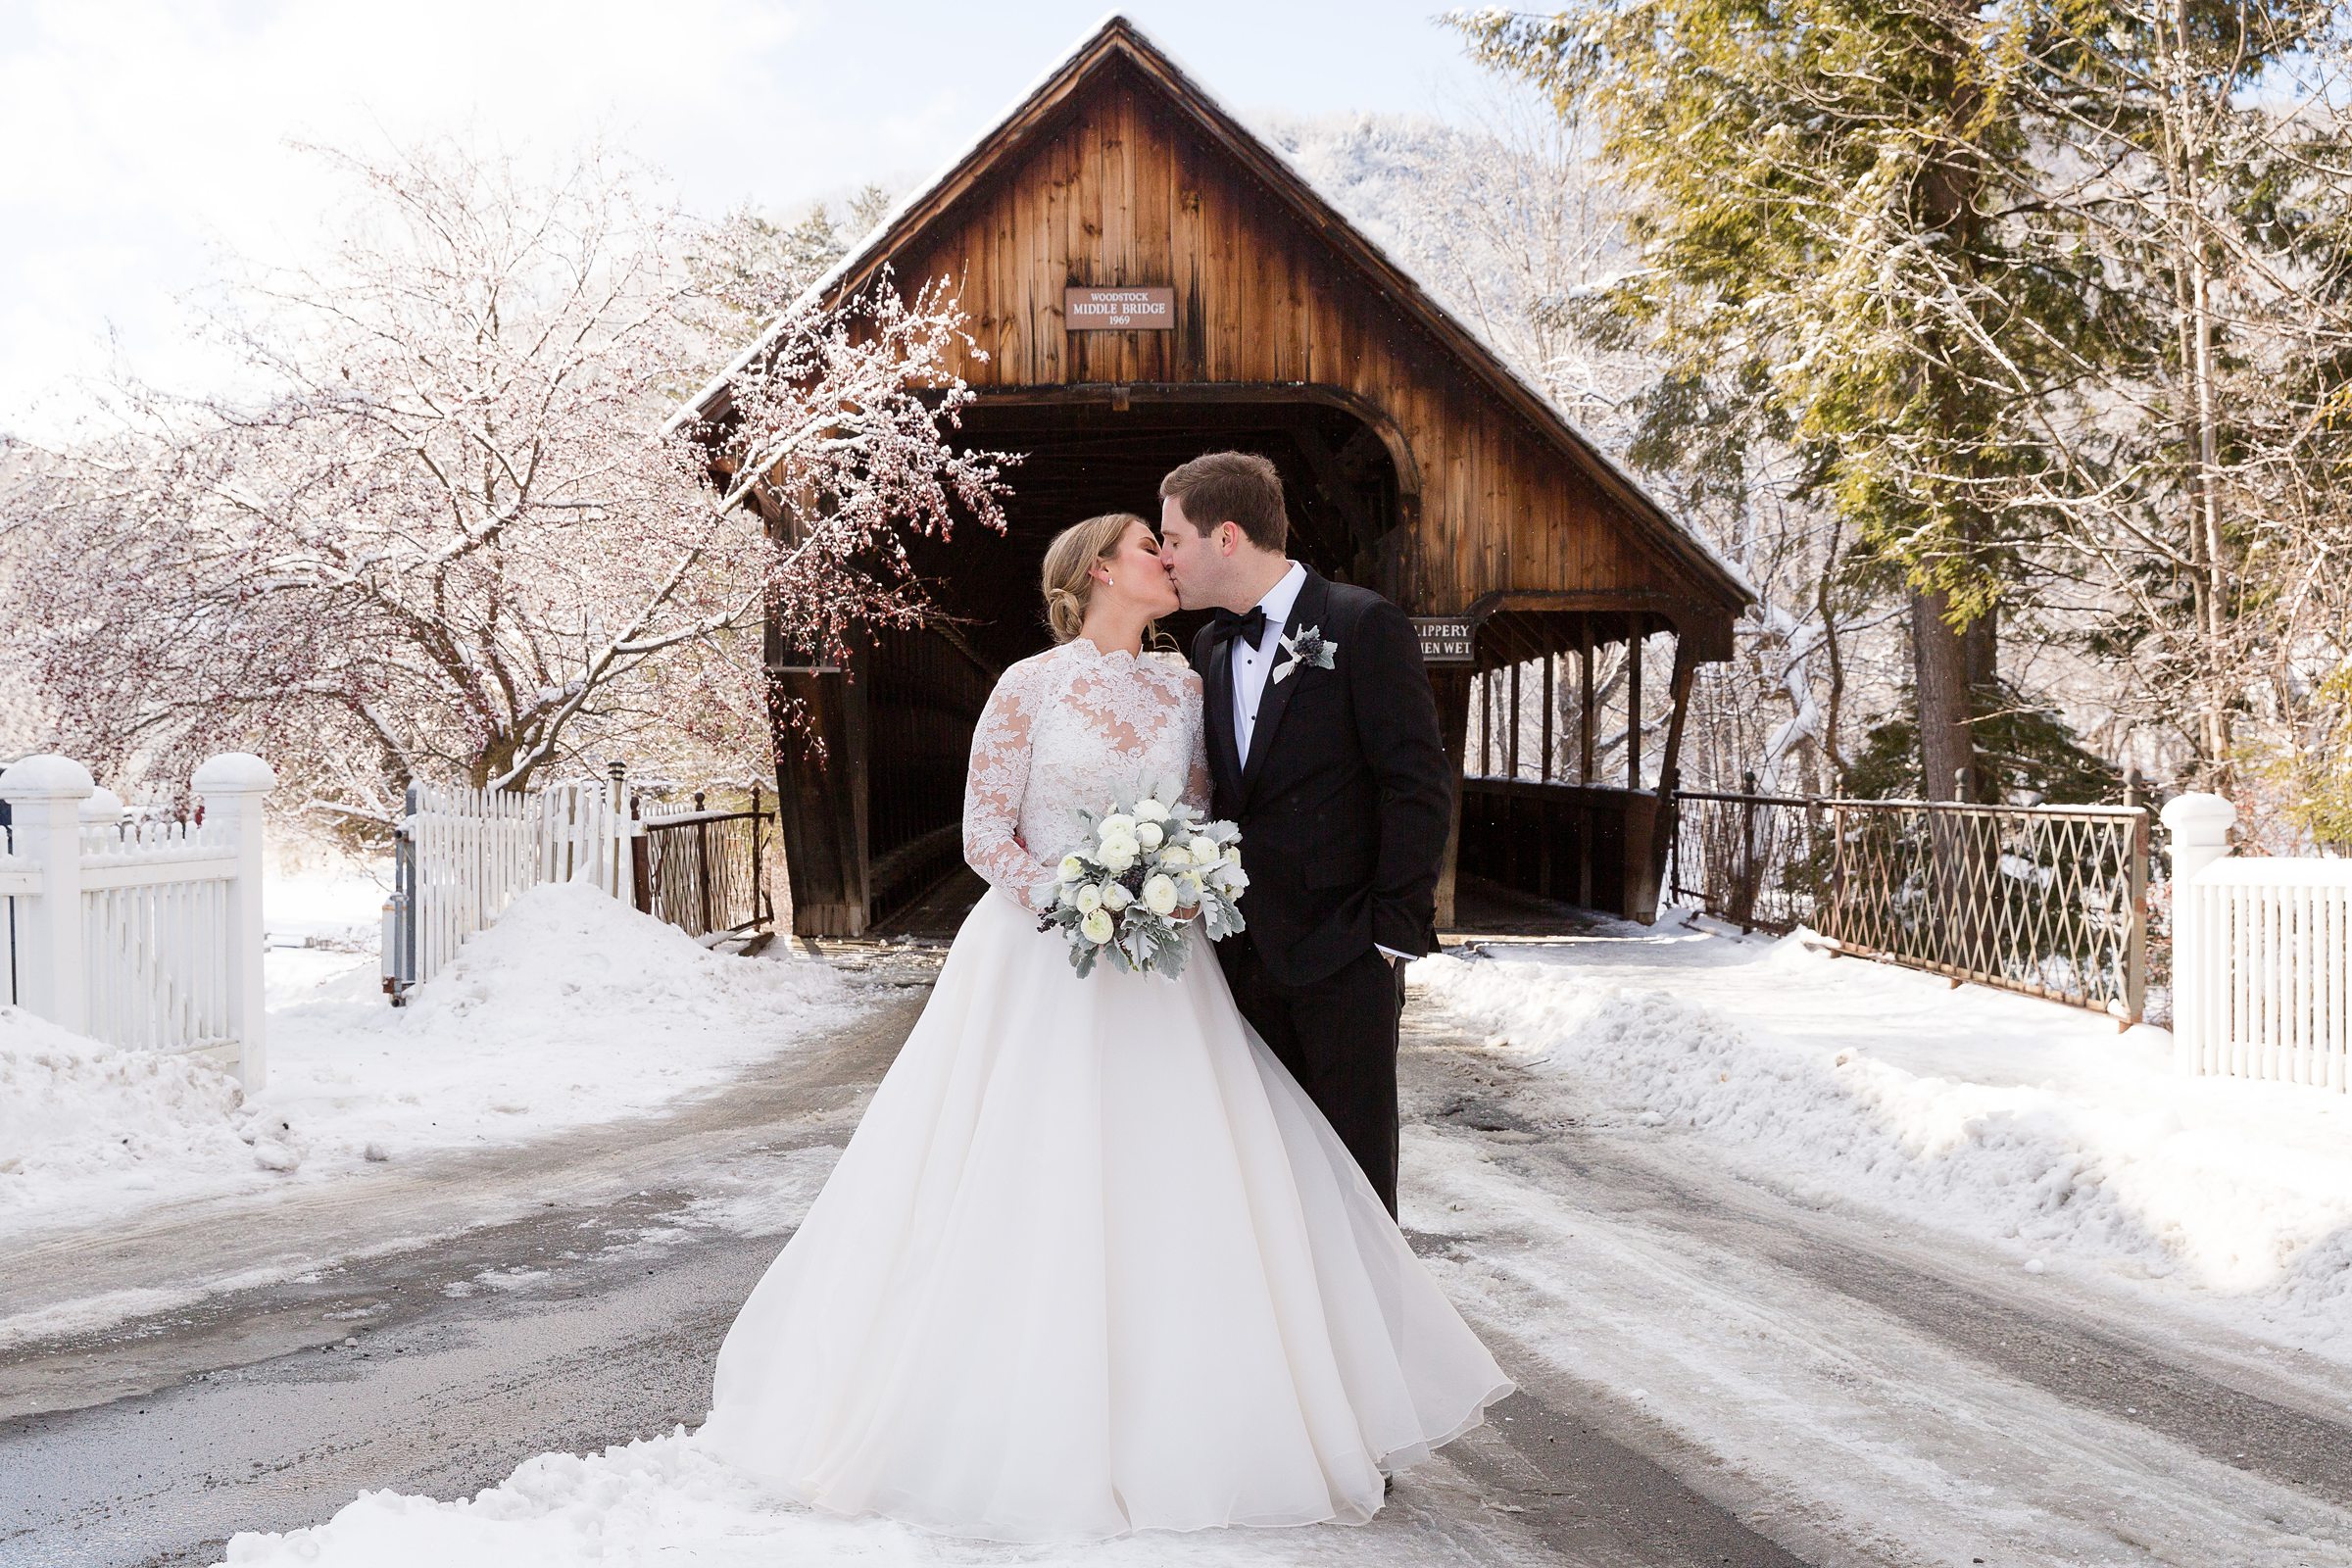 Bride and groom standing in front of wooden bridge for winter wedding